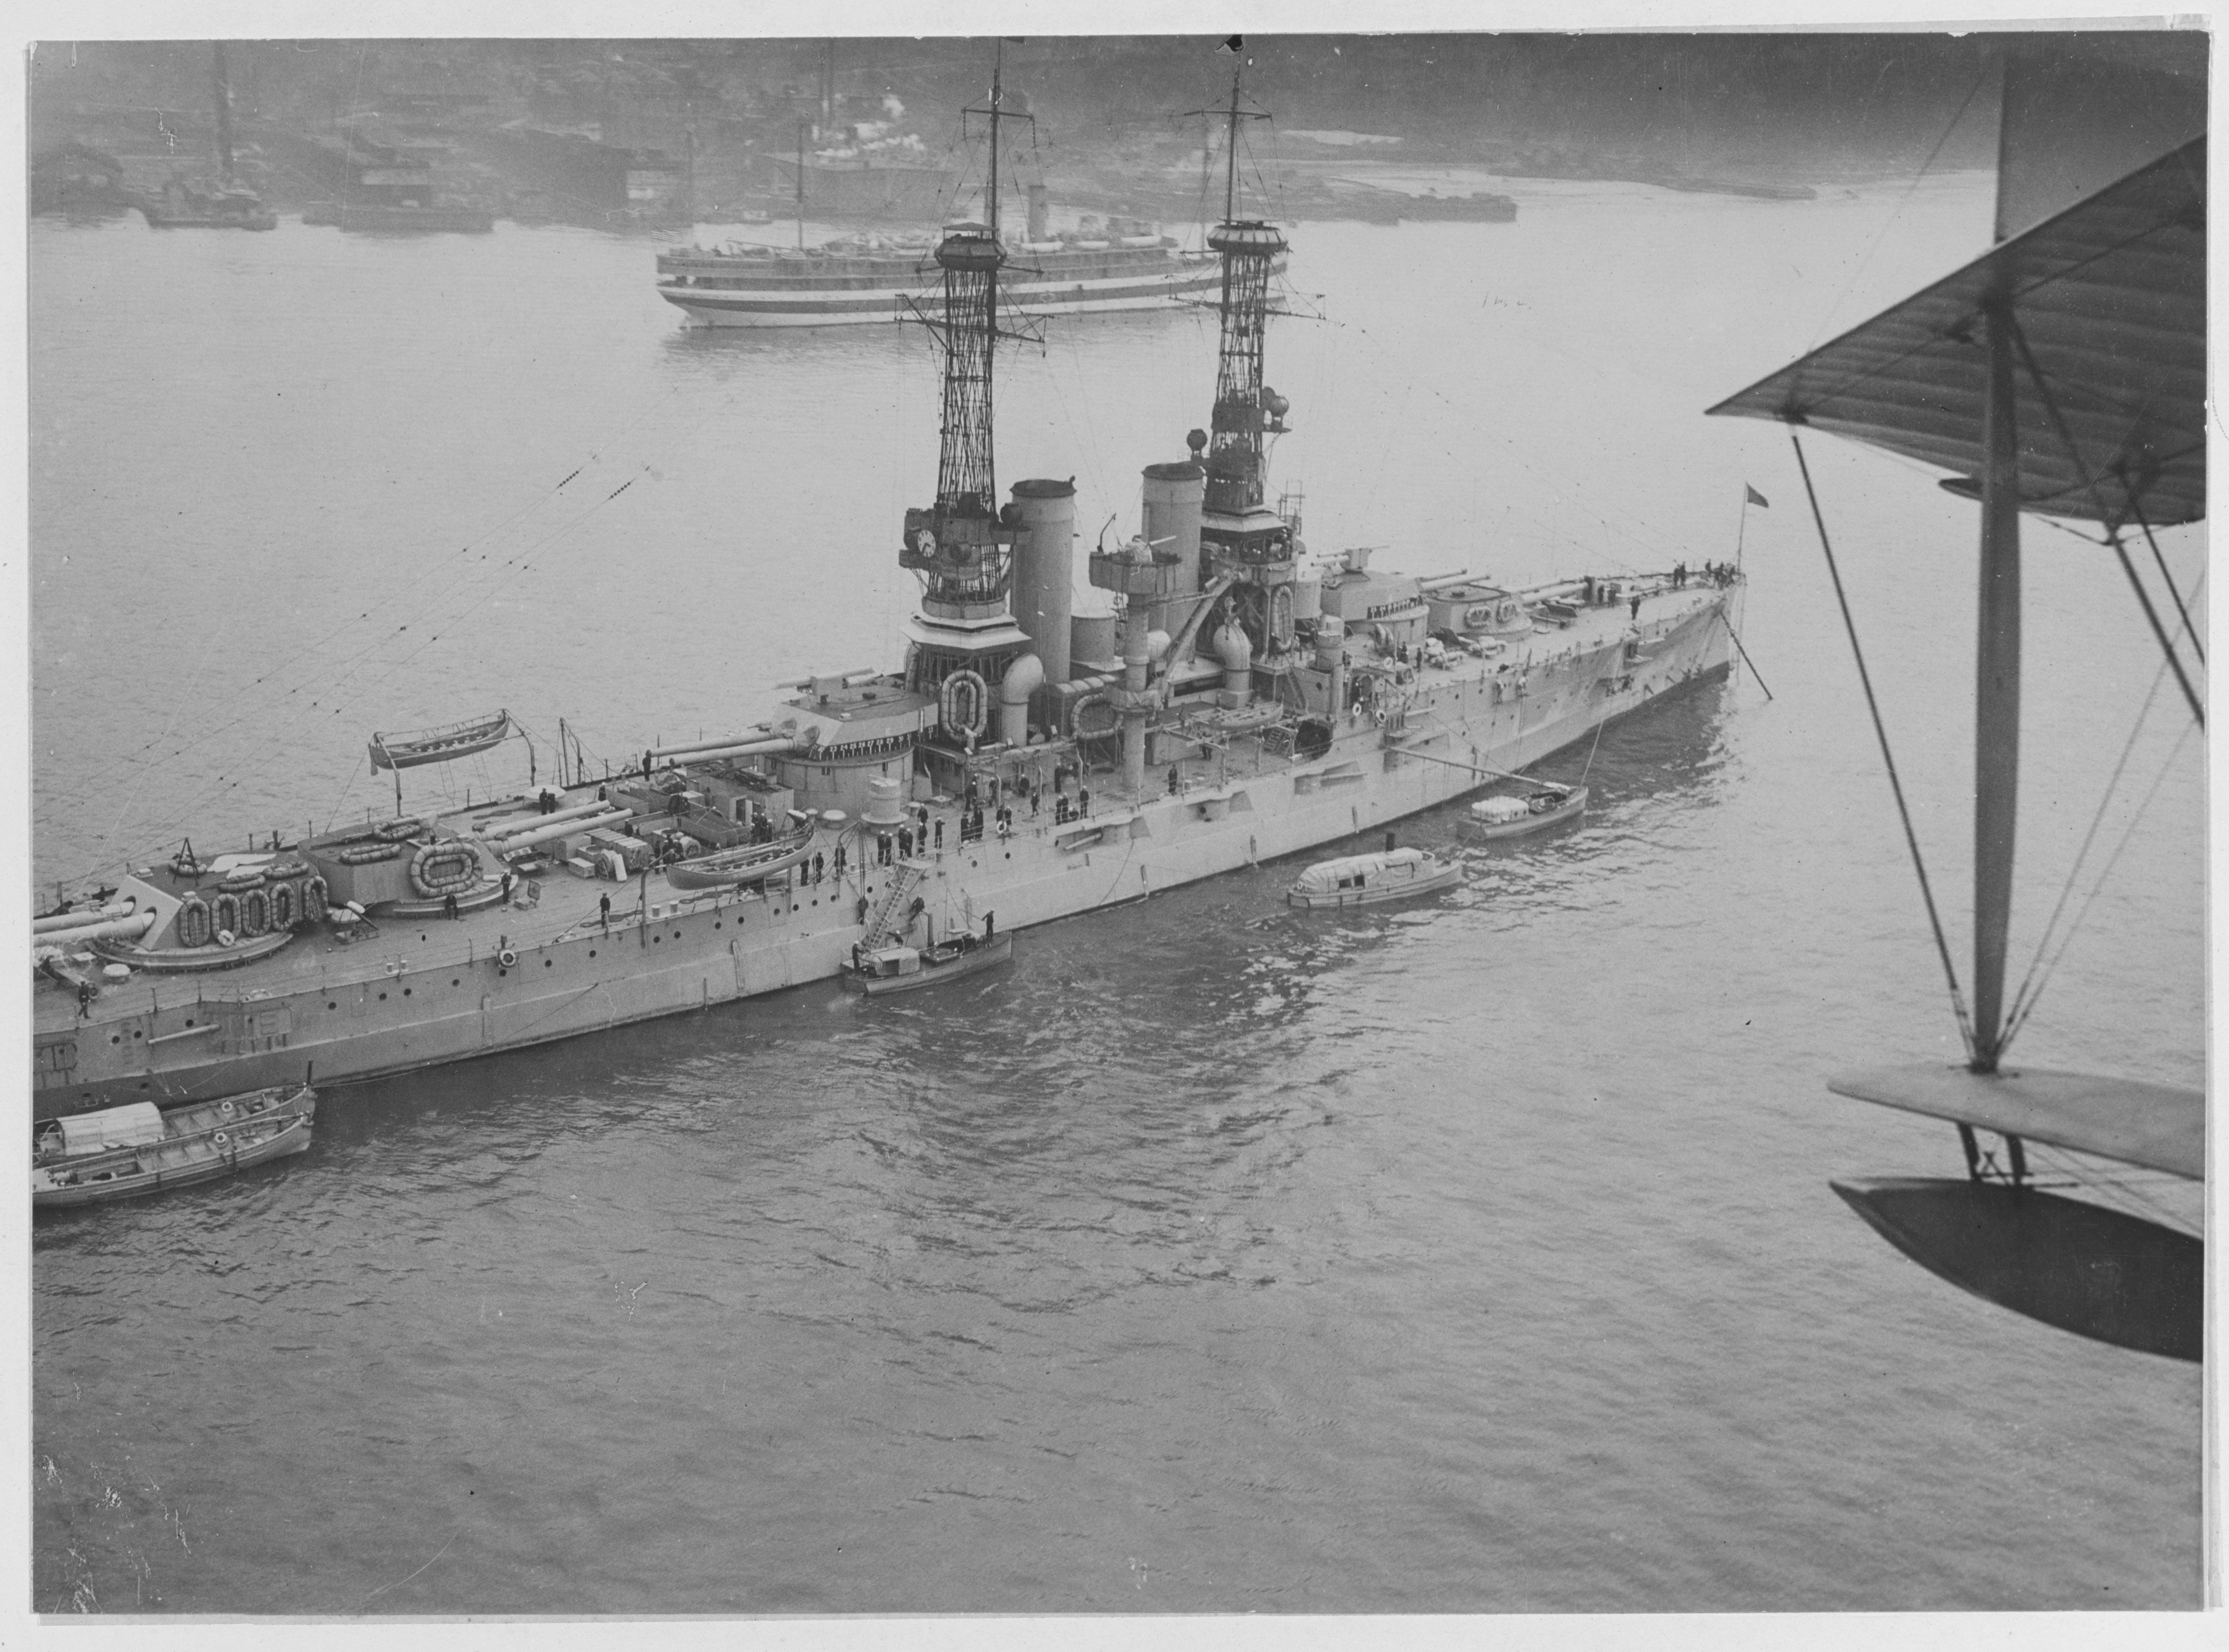 生活 日常 各种舰船相关的杂图第四十二期1919年佛罗里达号战列舰航拍